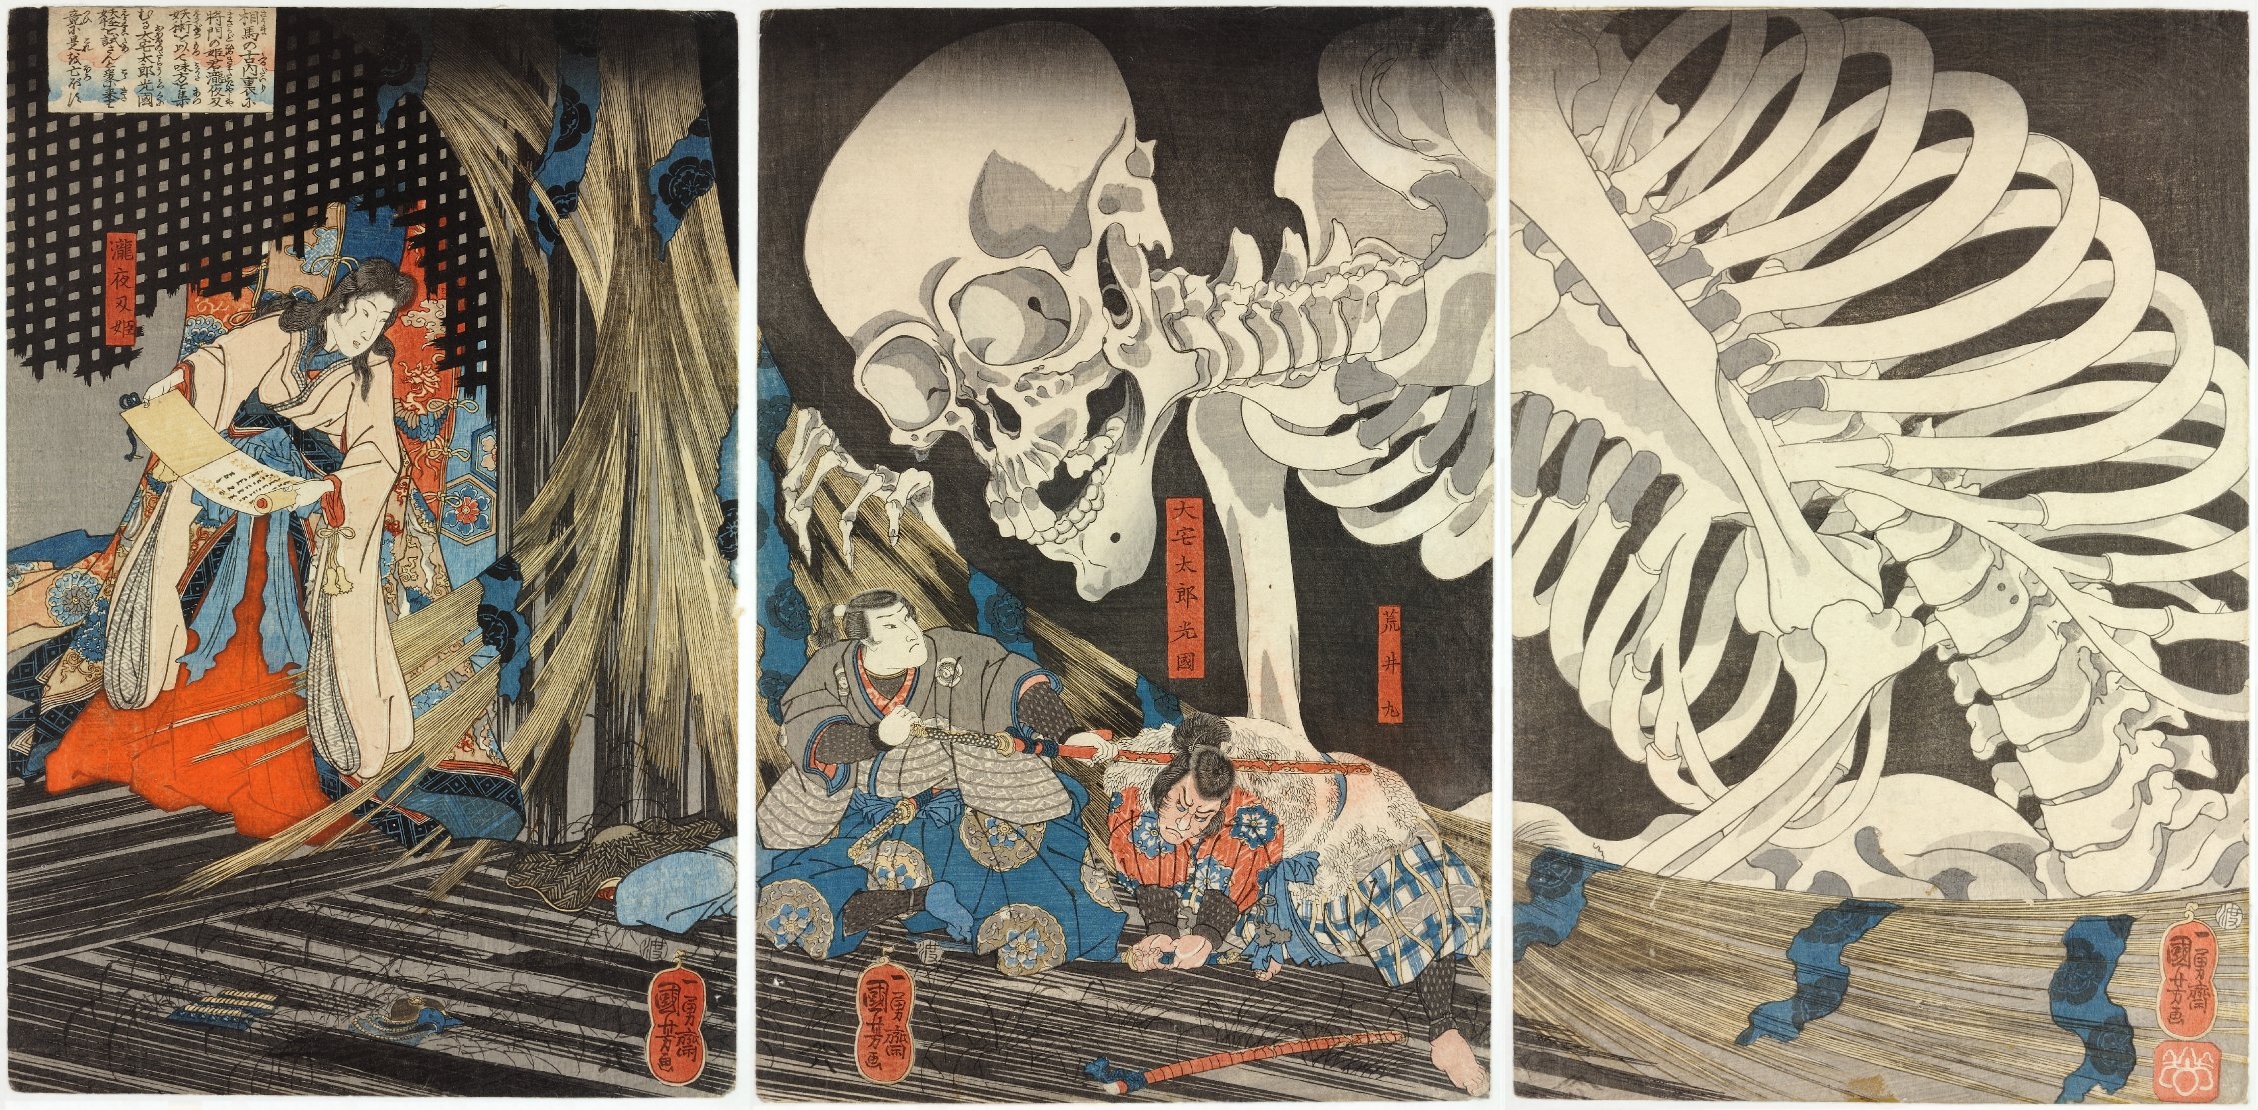 A boszorkányTakiyasha és a csontváz kísértet by Utagawa Kuniyoshi - 1844 körül - 35 x 71 cm 